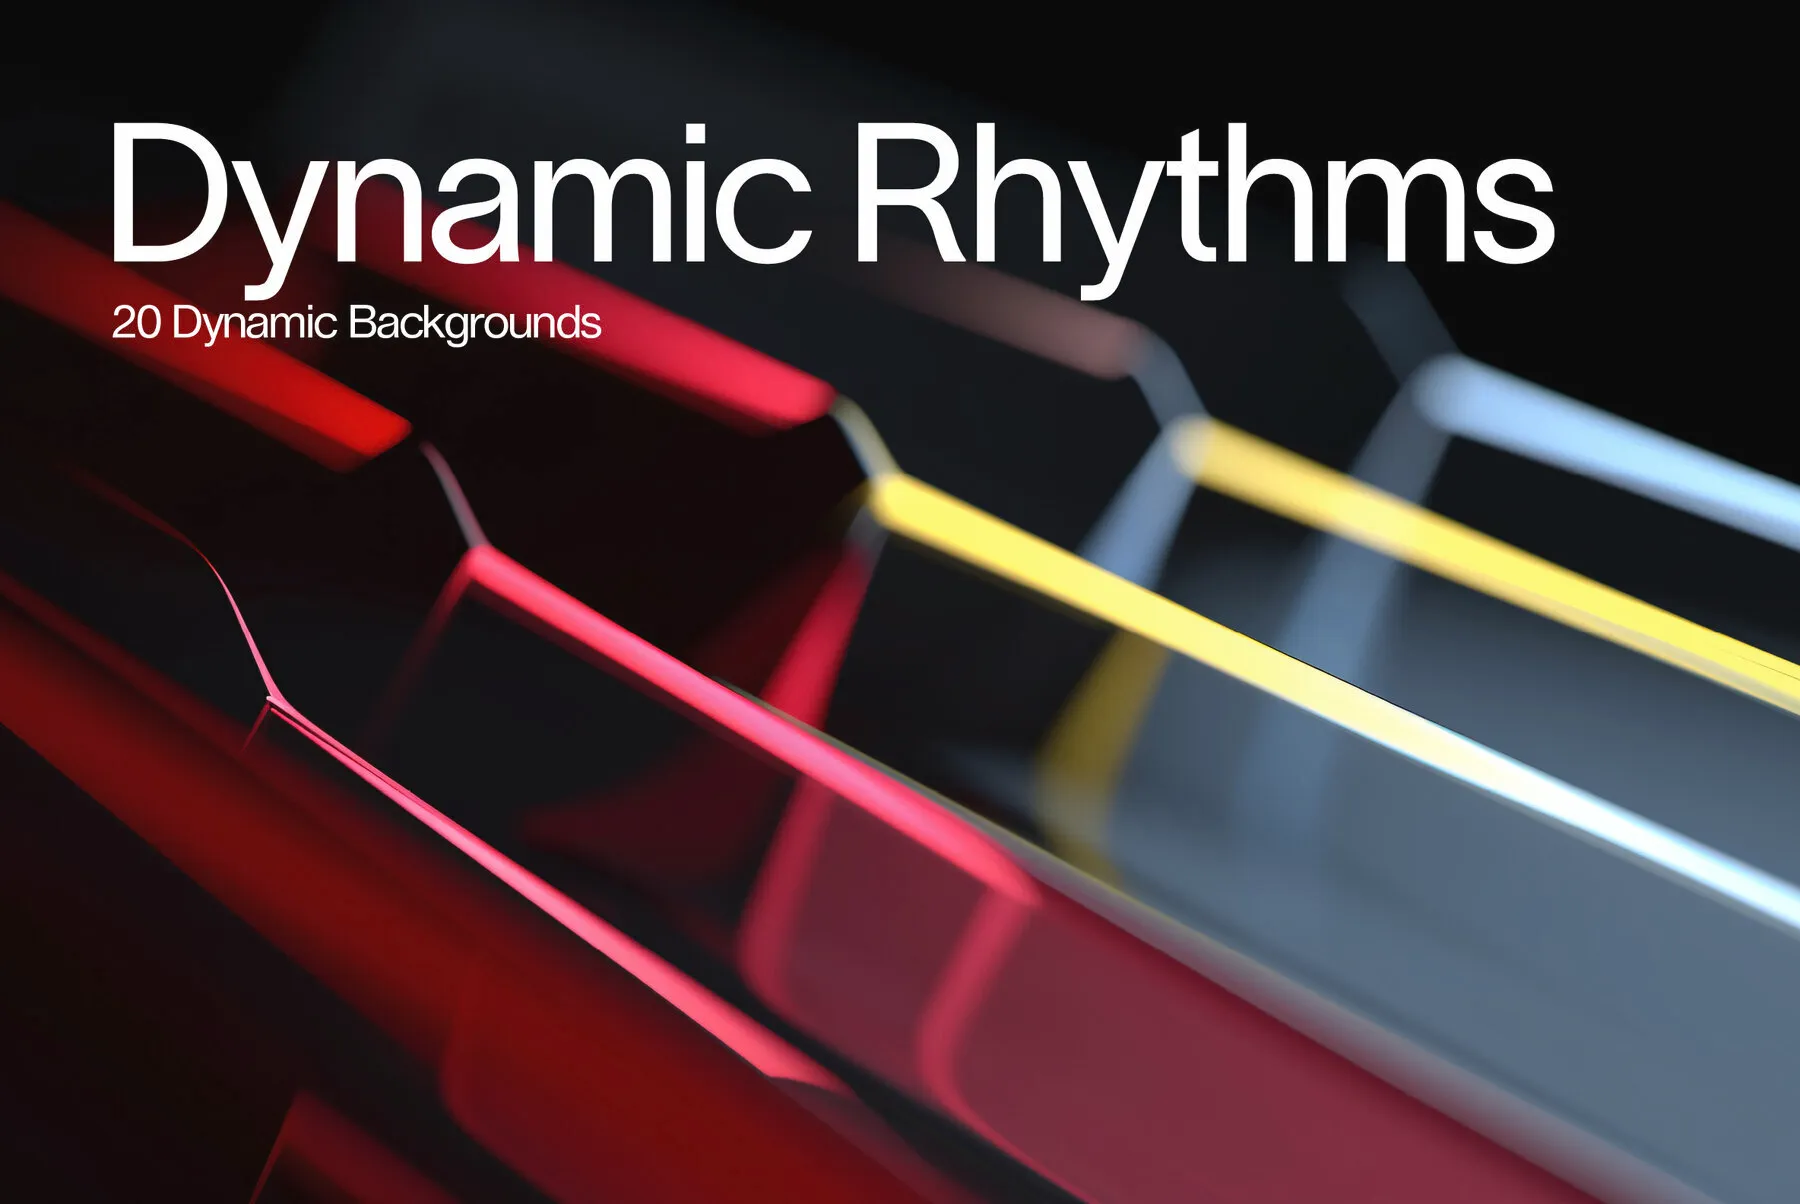 Dynamic Rhythms